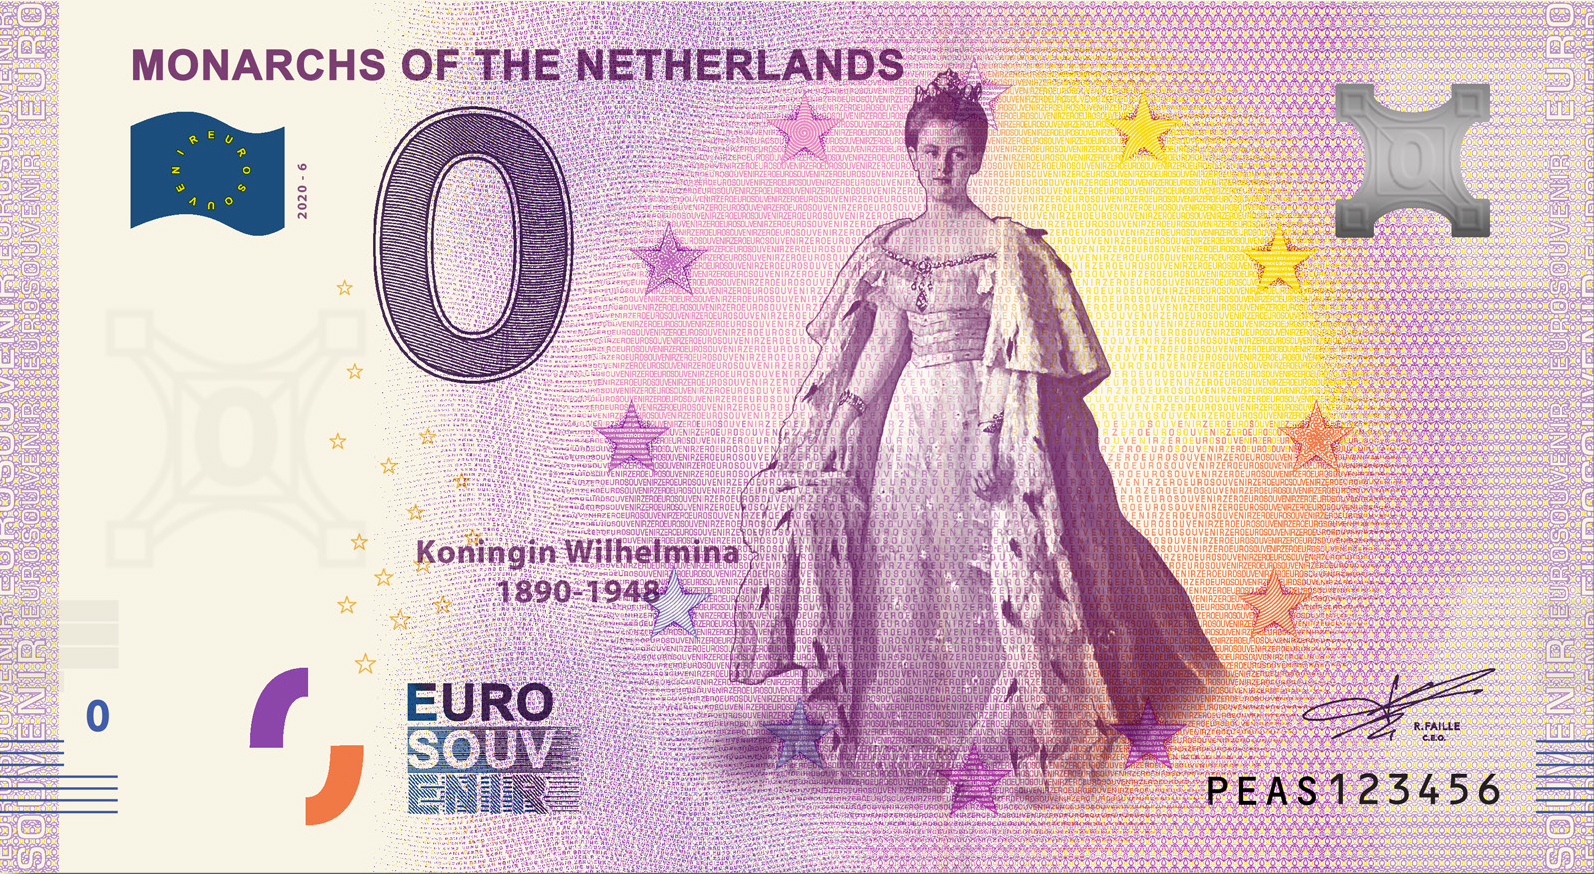 0 Euro souvenir note Nederland 2020 - Koningin Wilhelmina